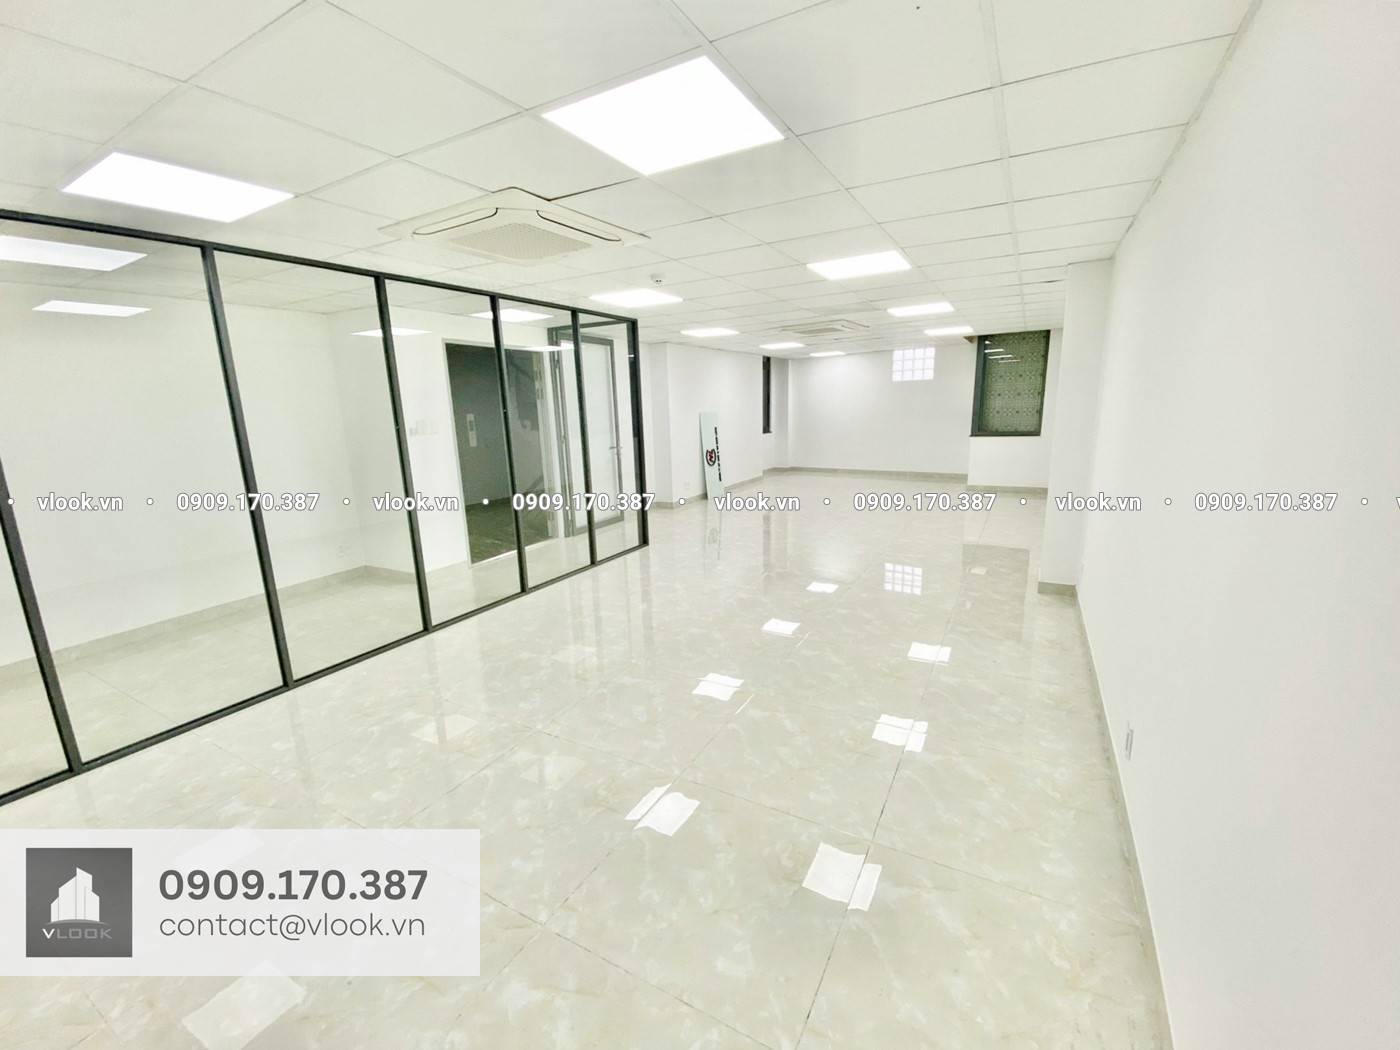 Cao ốc văn phòng cho thuê tòa nhà Phúc Huy Office Building, 30 Ấp Bắc, Quận Tân Bình, TPHCM - vlook.vn - 0909 170 387